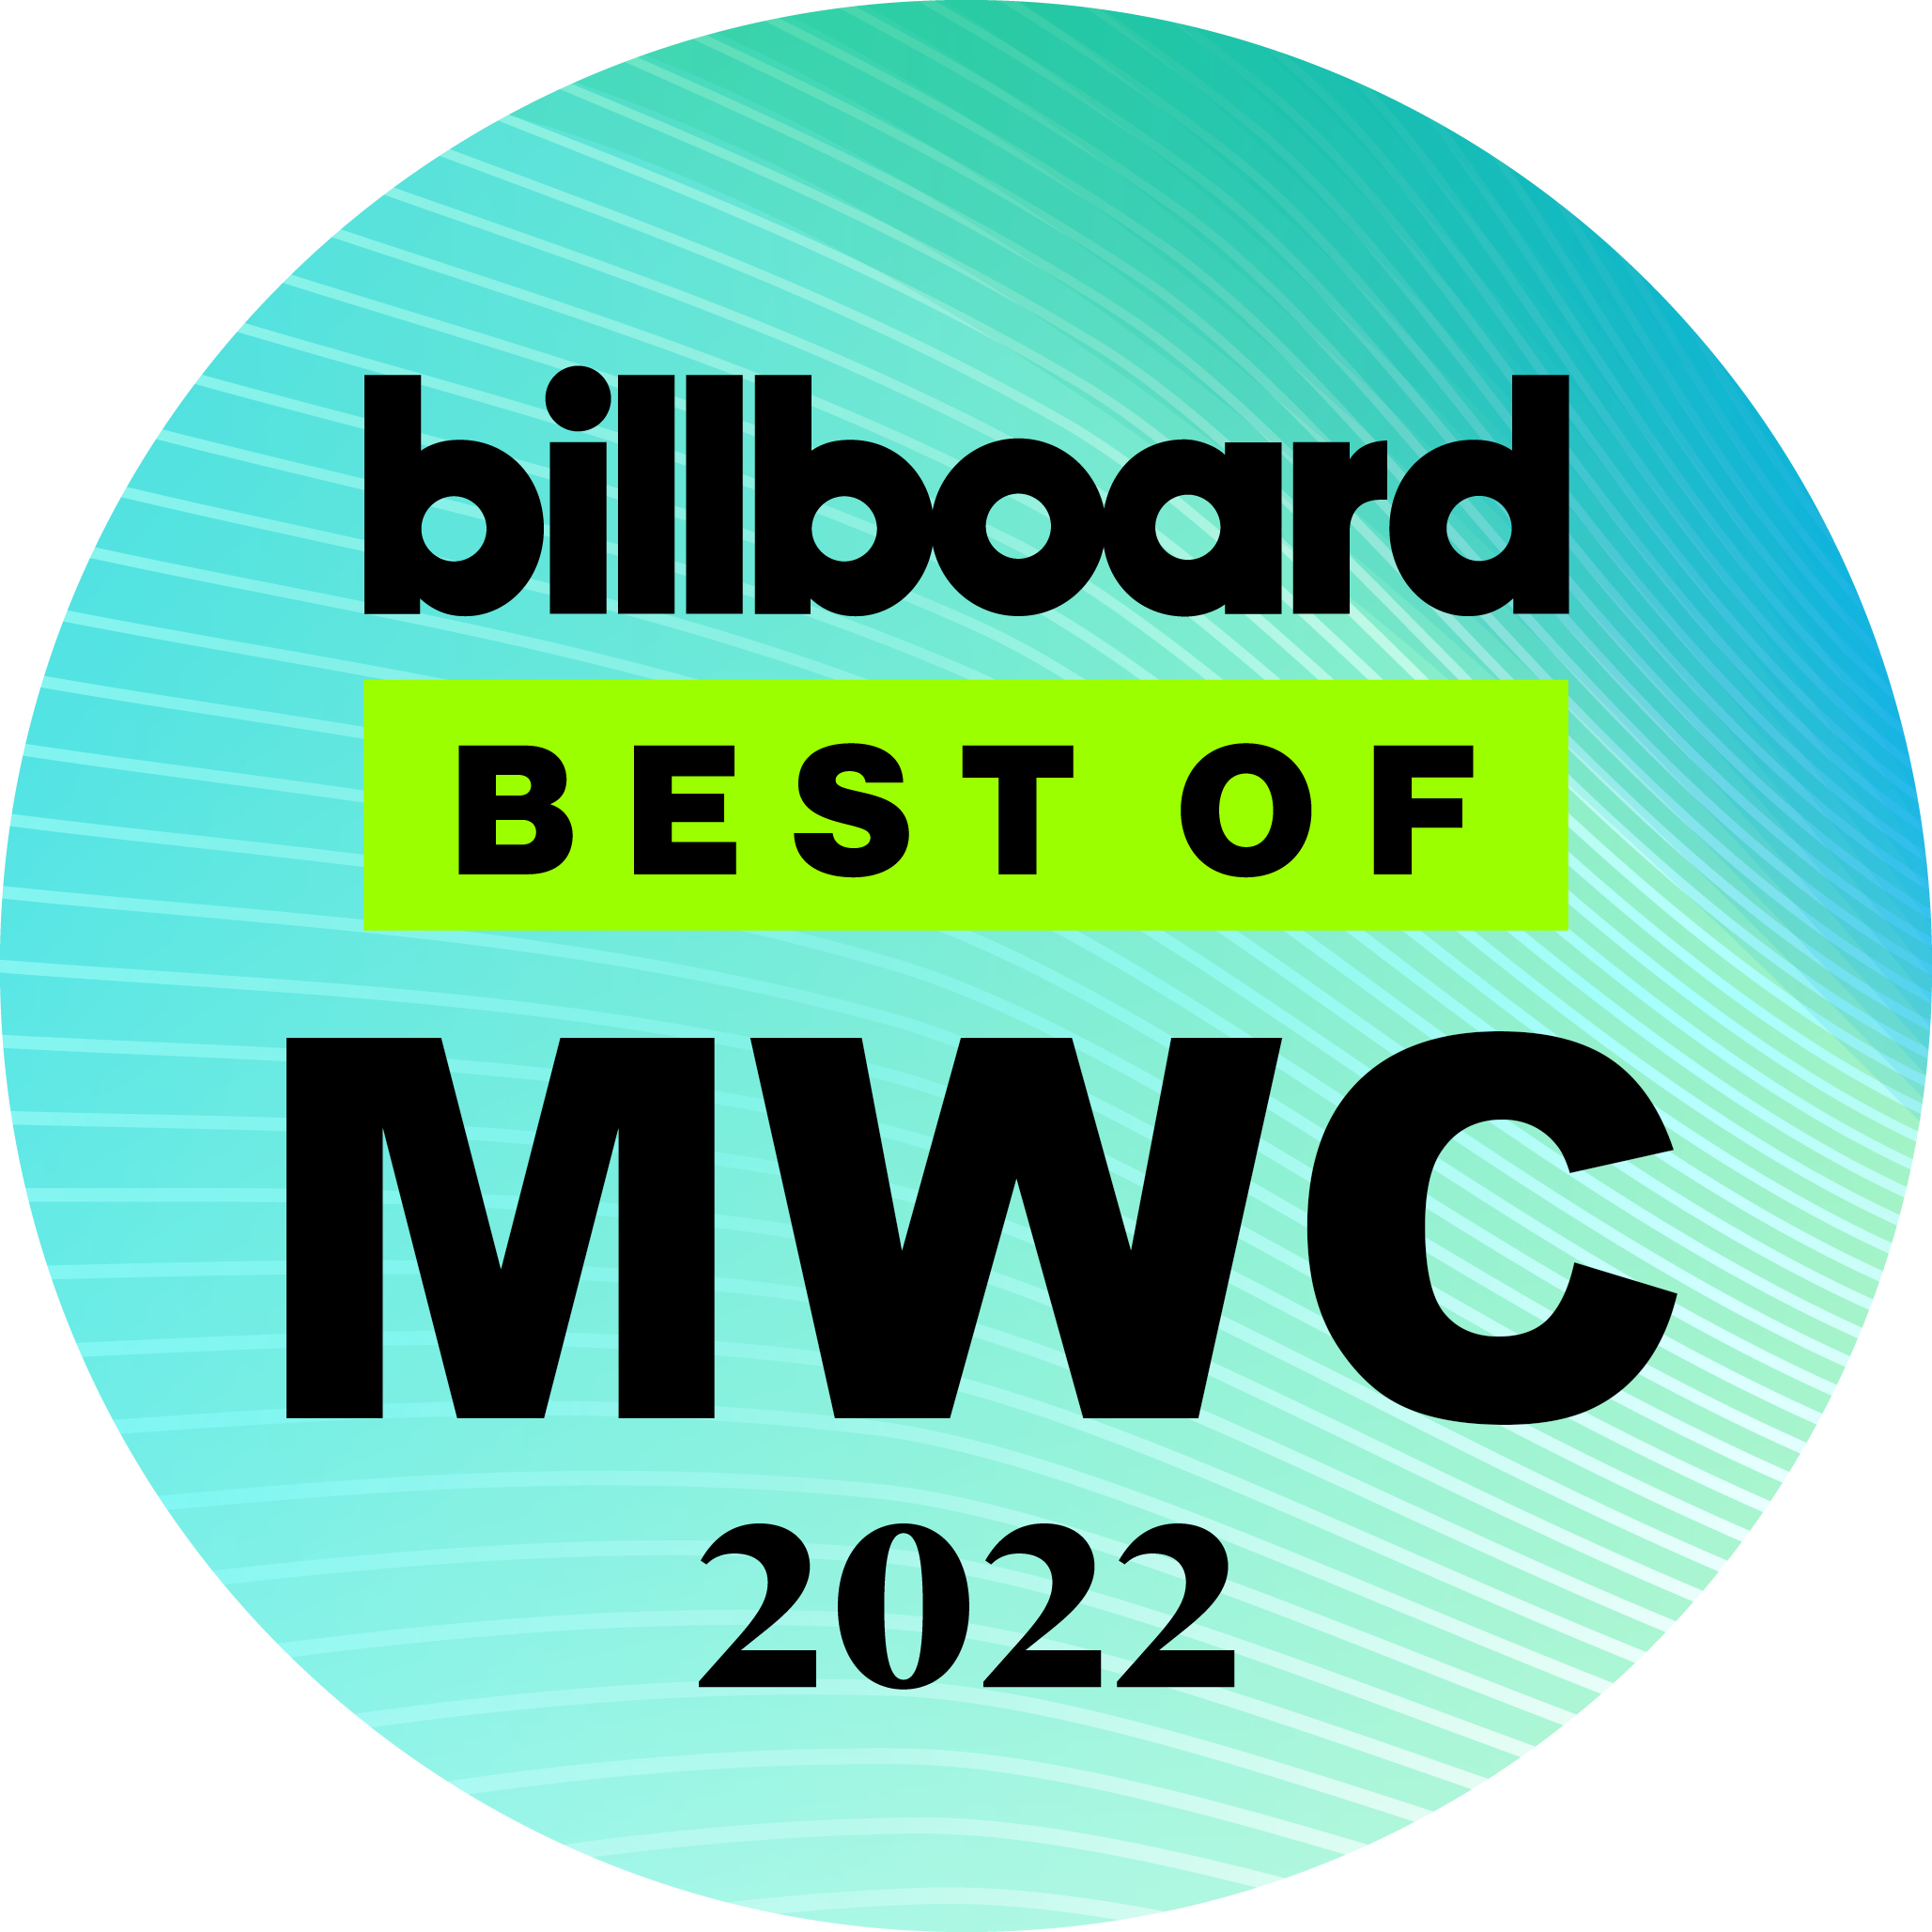 Best of MWC-Auszeichnung des Musikmedium 'Billboard'